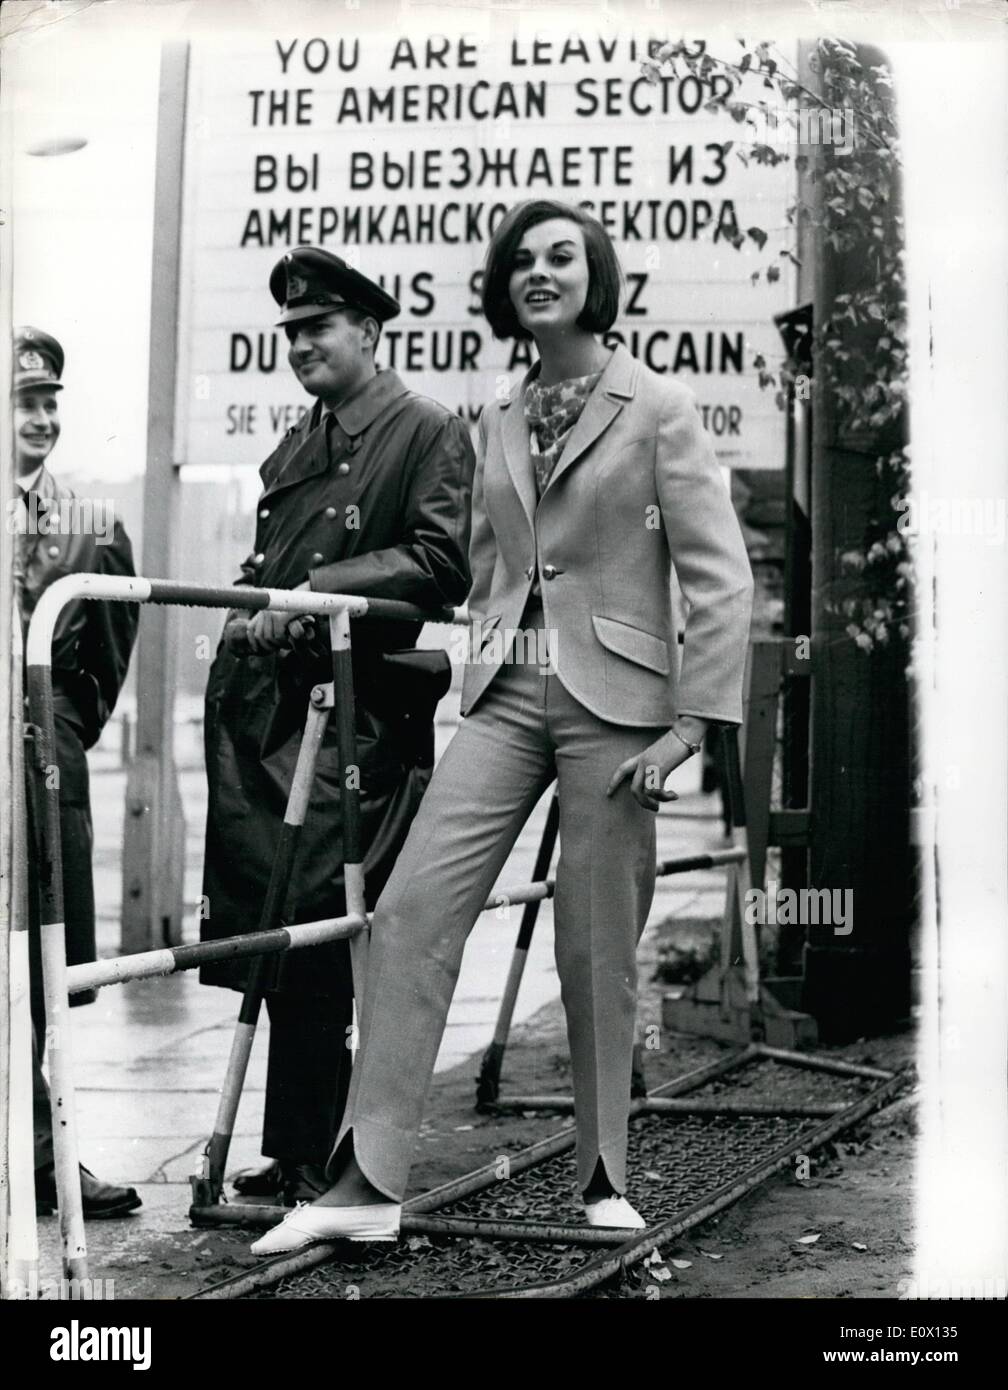 10. Oktober 1964 - inszenierte British Fashion Show In Berlin  Großbritannien letzte Nacht die größte Modenschau in West-Berlin seit dem  Krieg zu sehen. Fast 1.000 Käufer drängten sich in die Krogesshalle, eine "